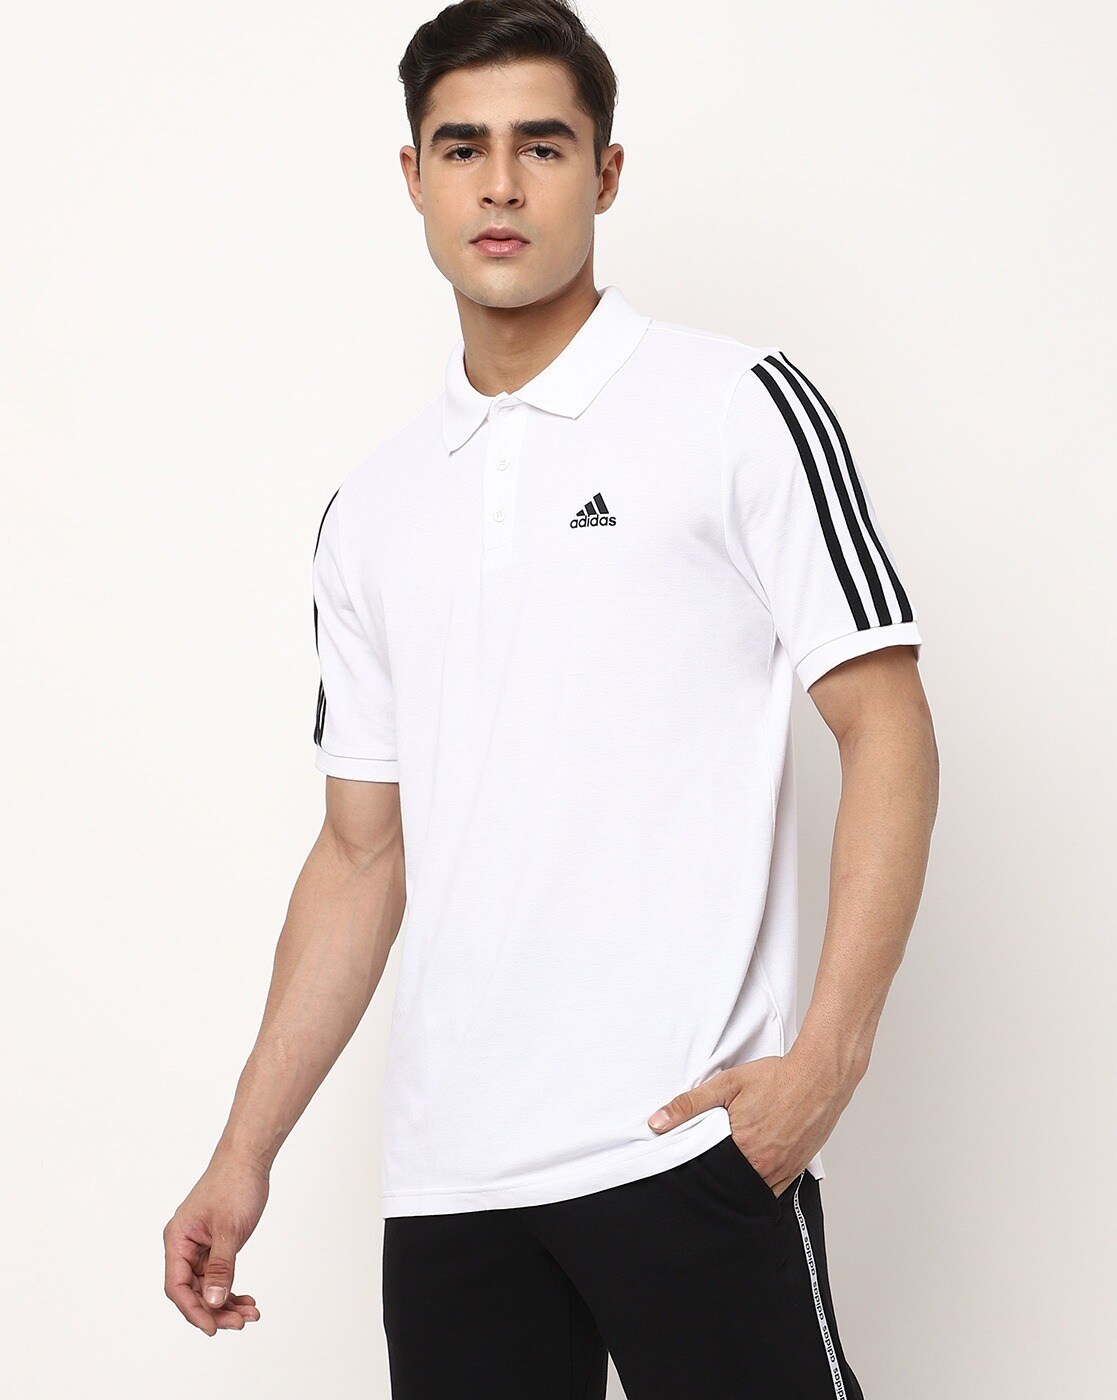 Adidas Polo White Tshirts - Buy Adidas Polo White Tshirts online in India